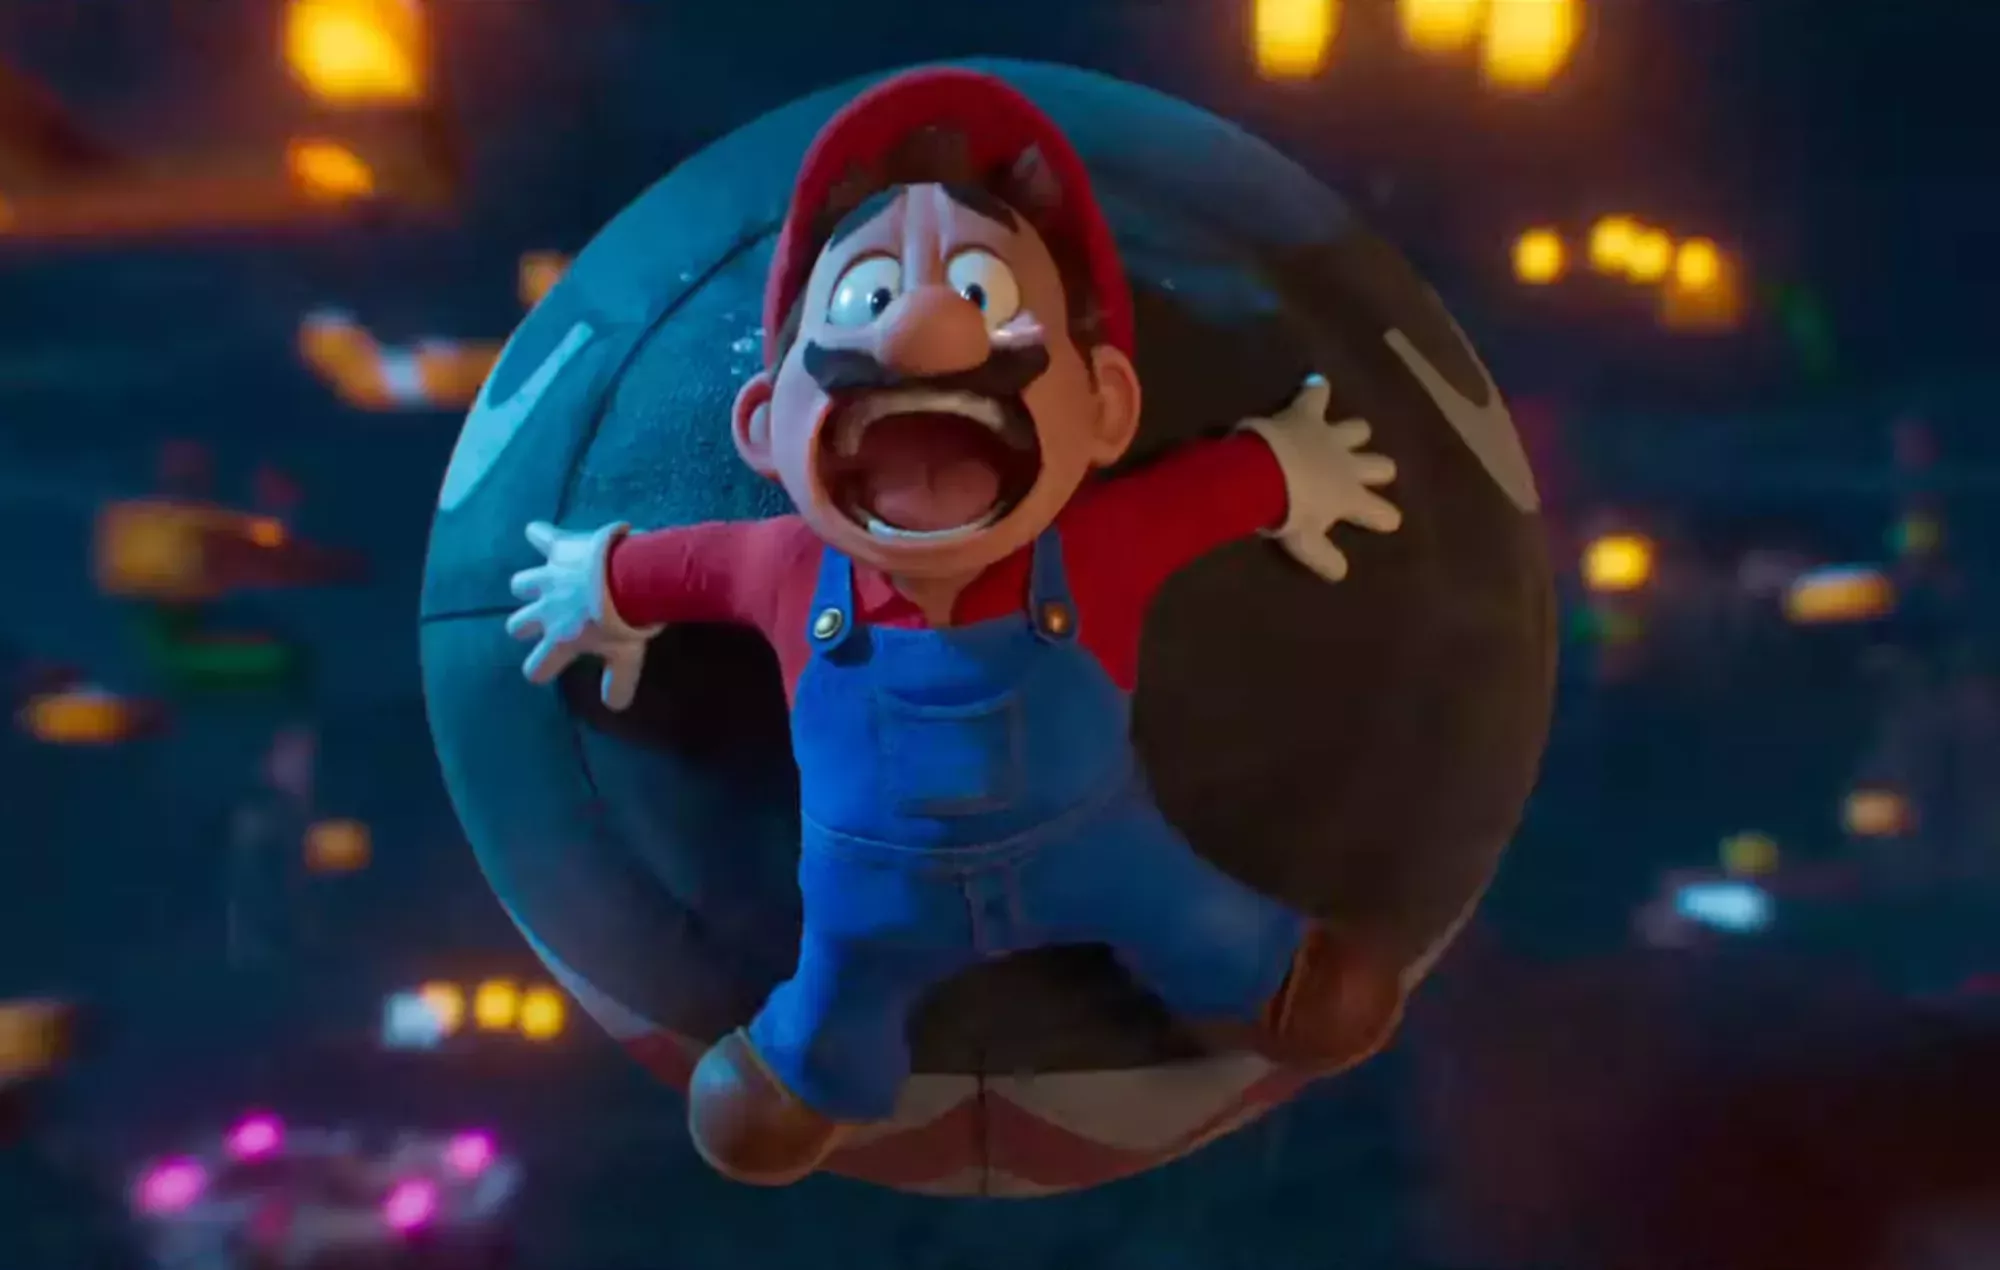 Bowser planea la dominación del mundo en el segundo tráiler de 'The Super Mario Bros. Movie'